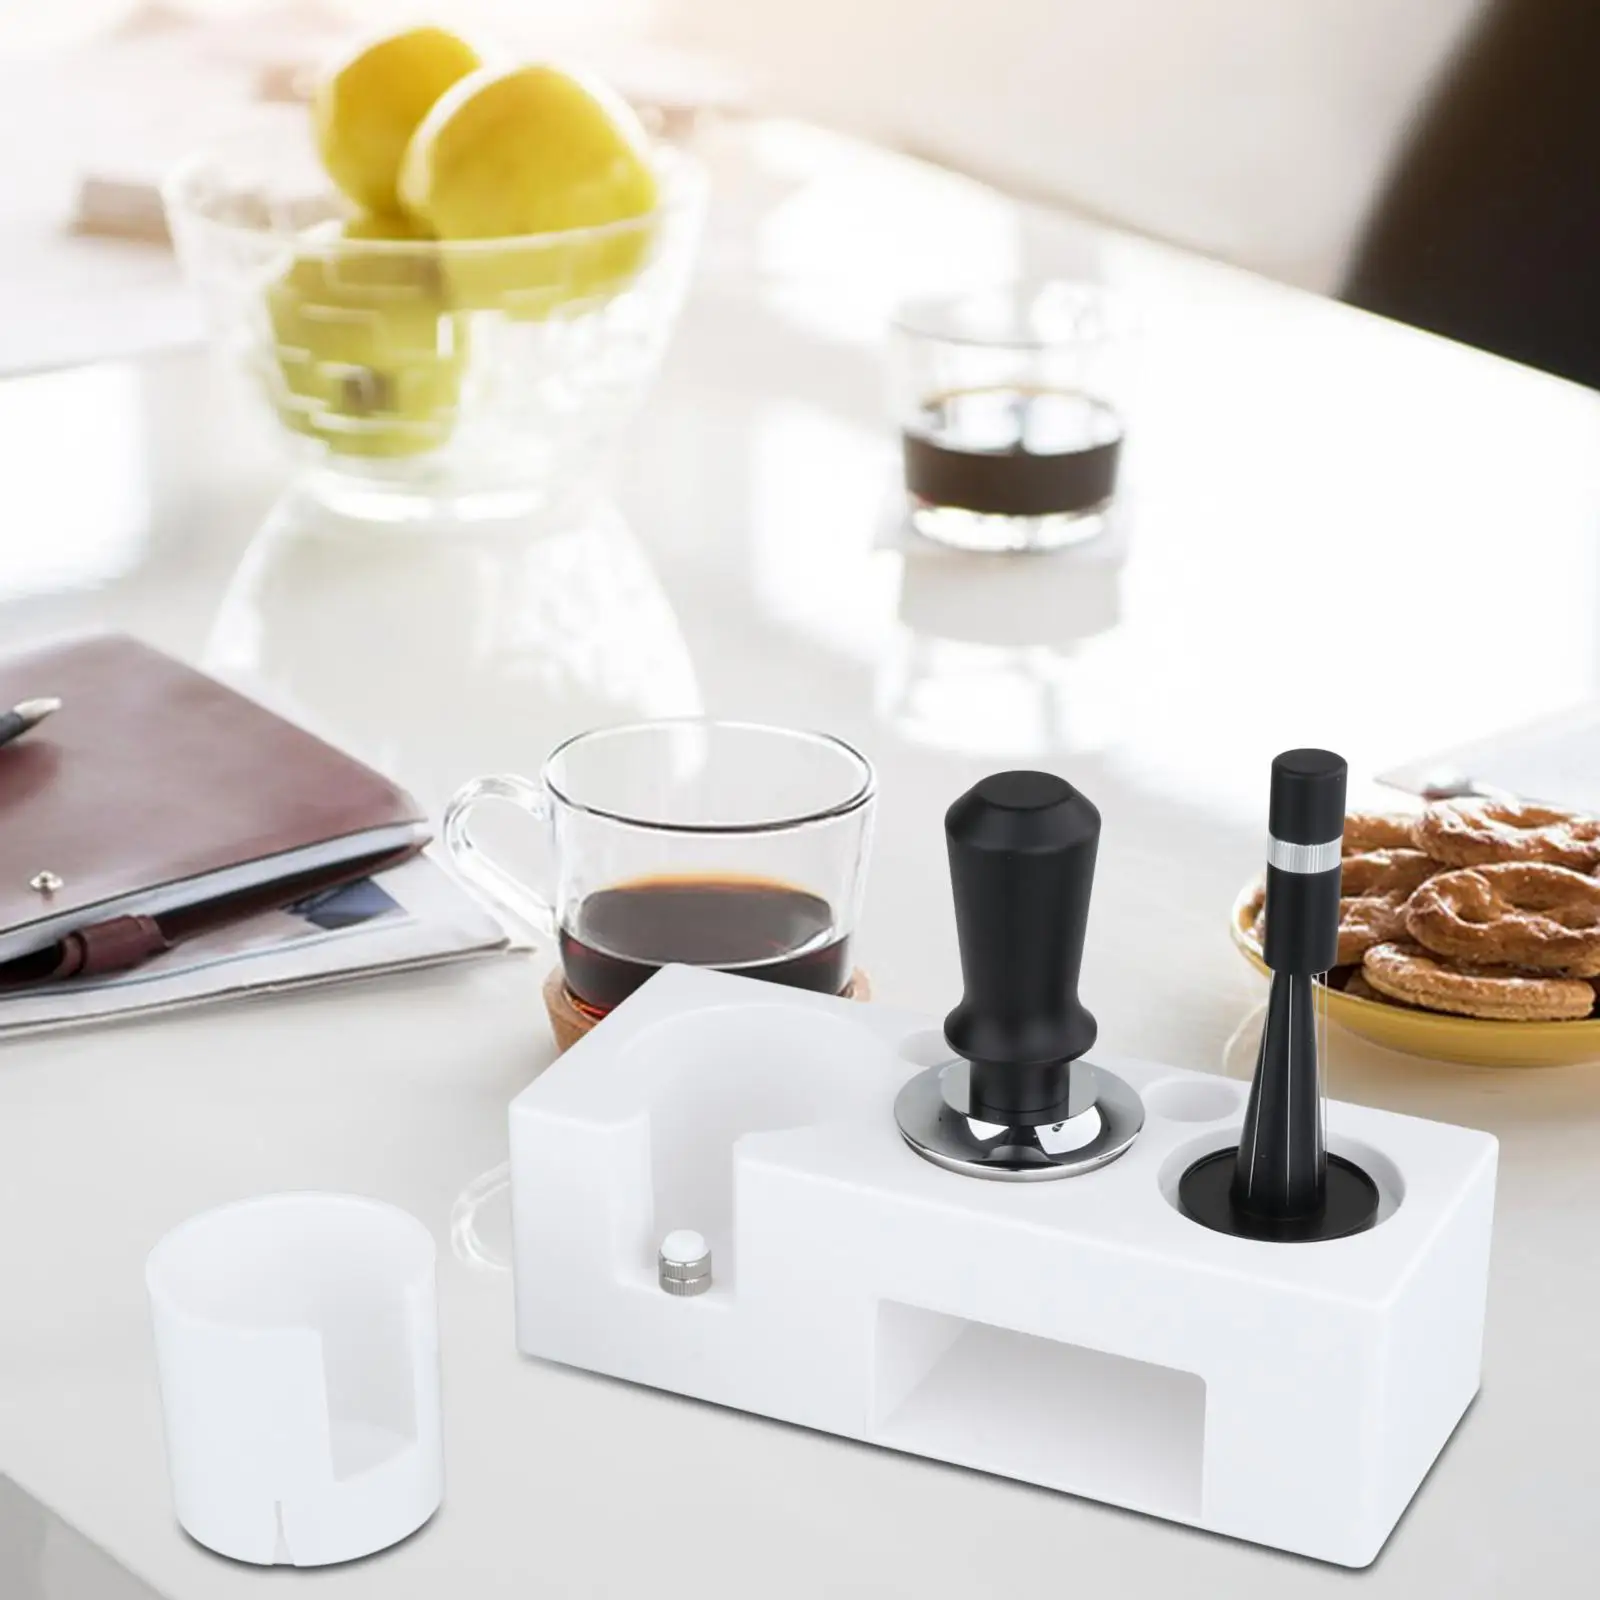 Espresso Tamper Mat Stand for Counters Espresso Machine Accessories Home